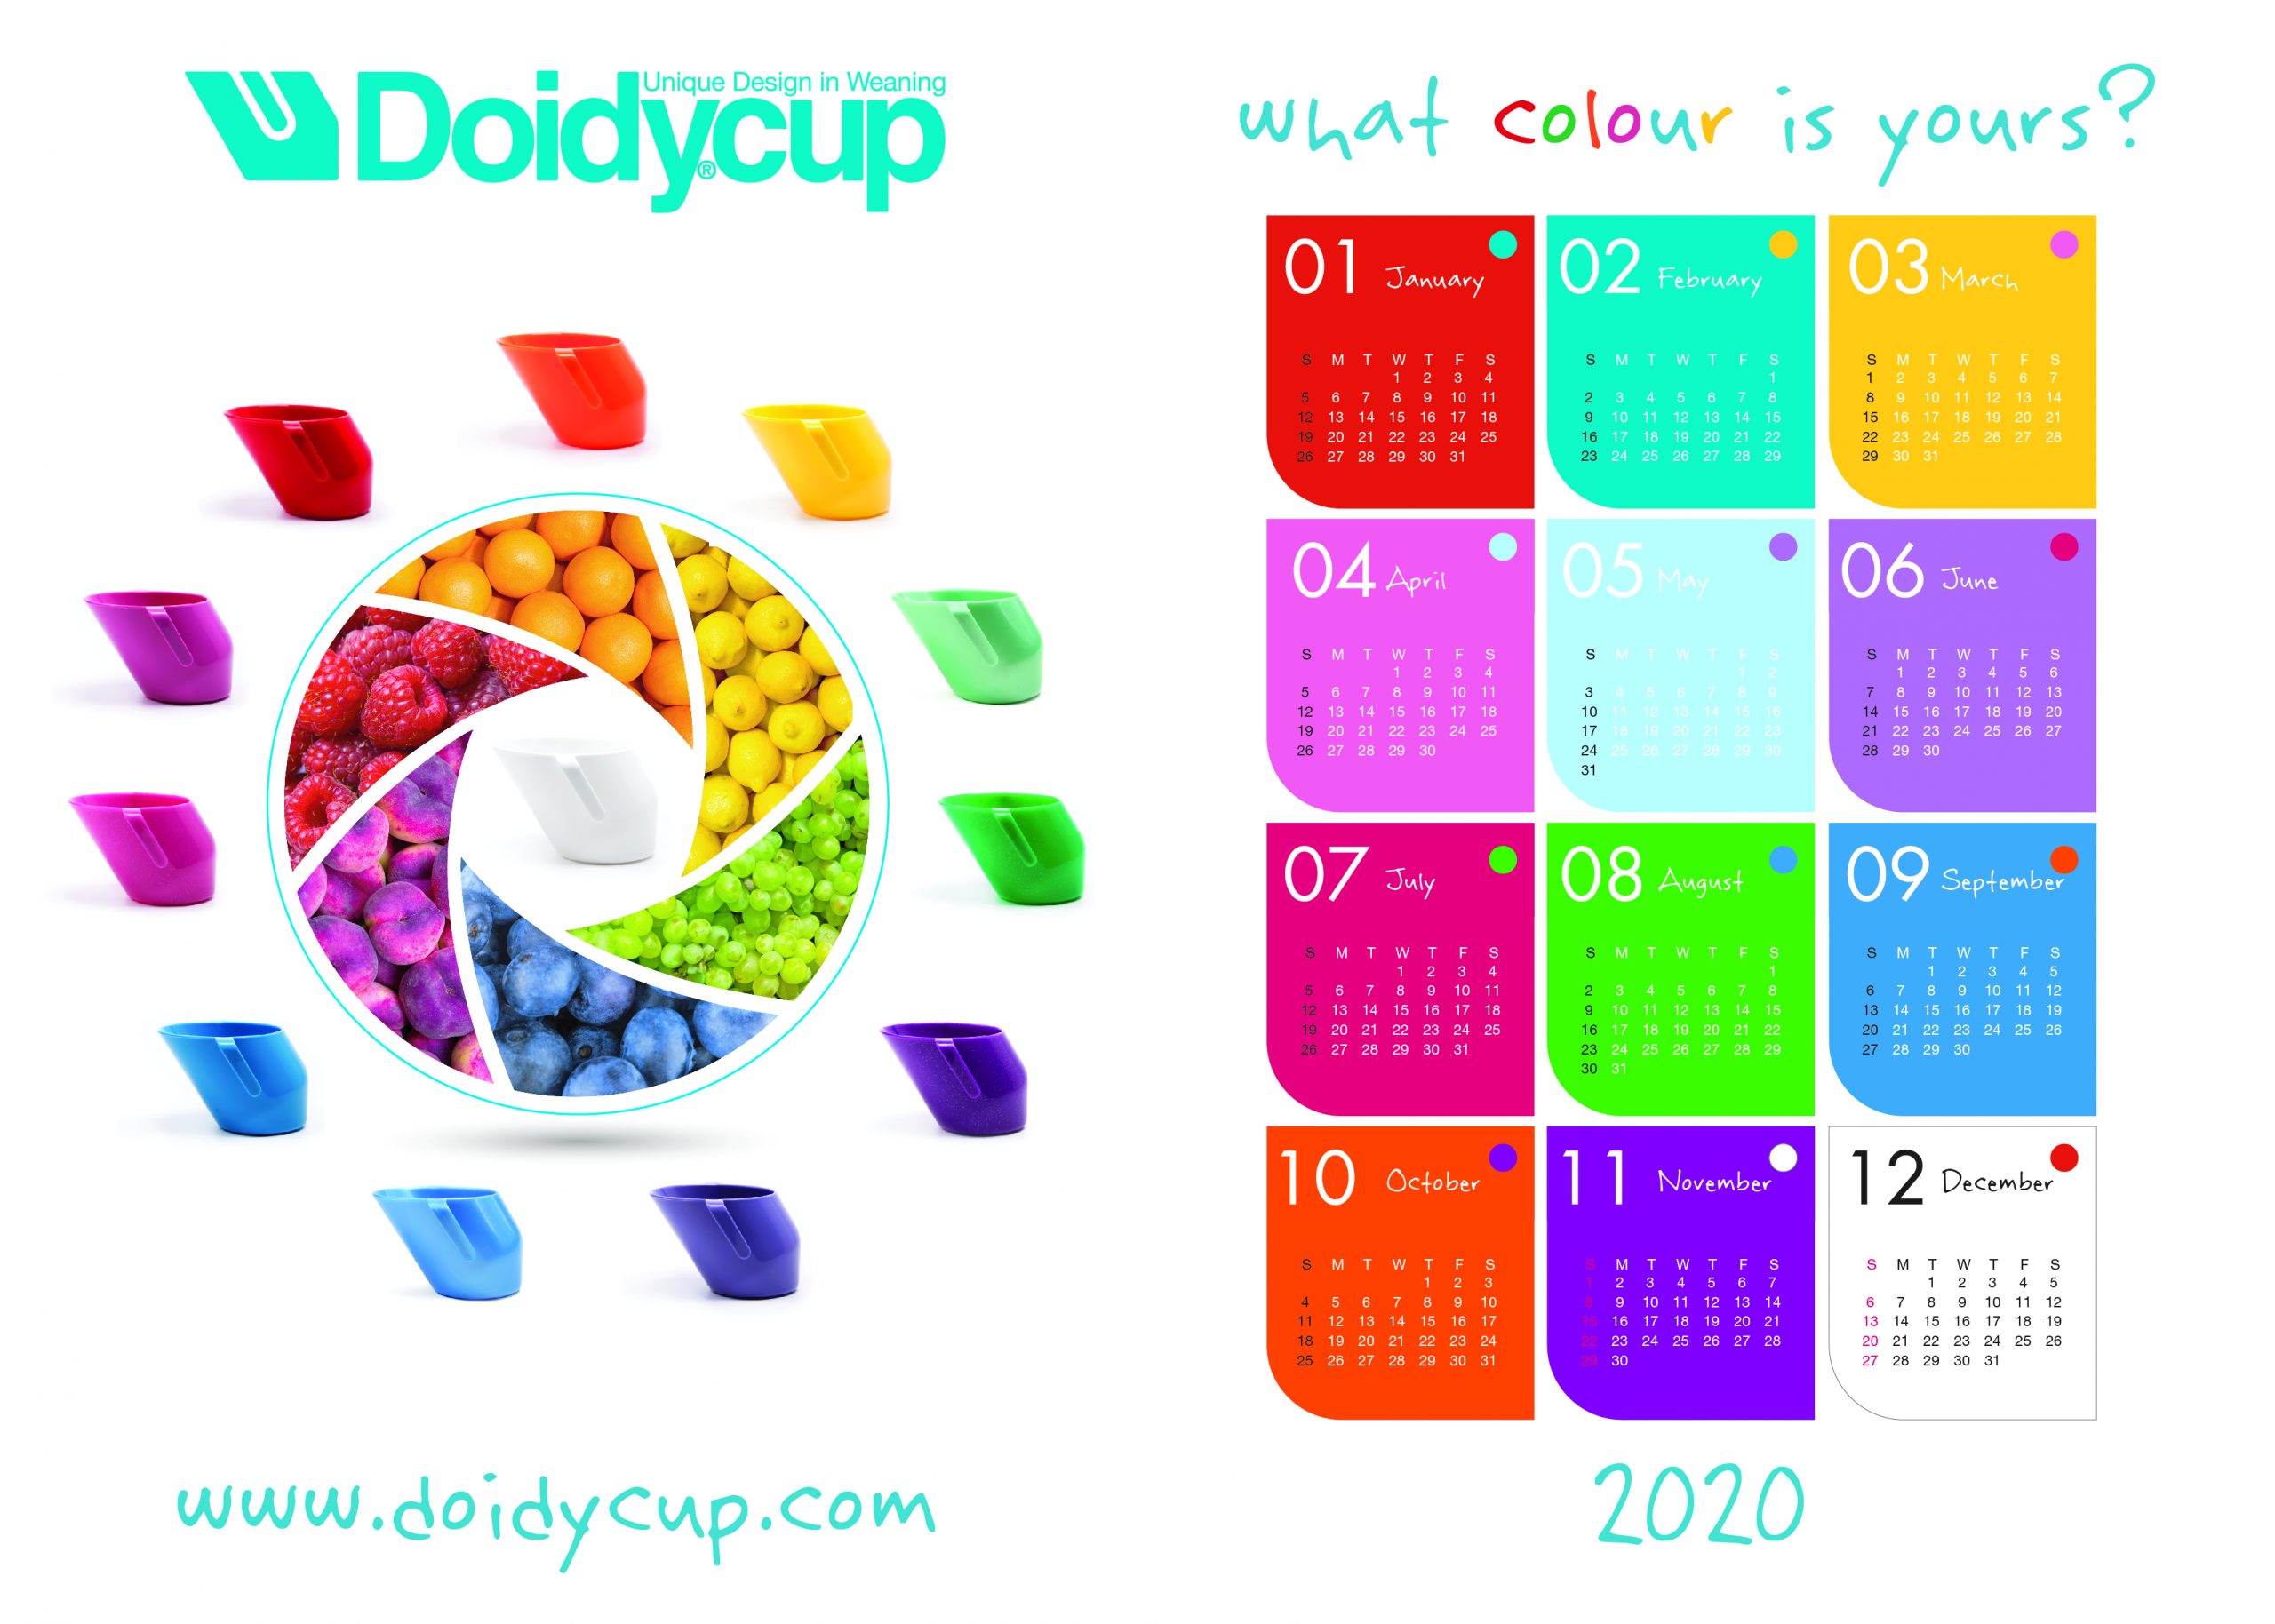 Doidycup 2020 calendar